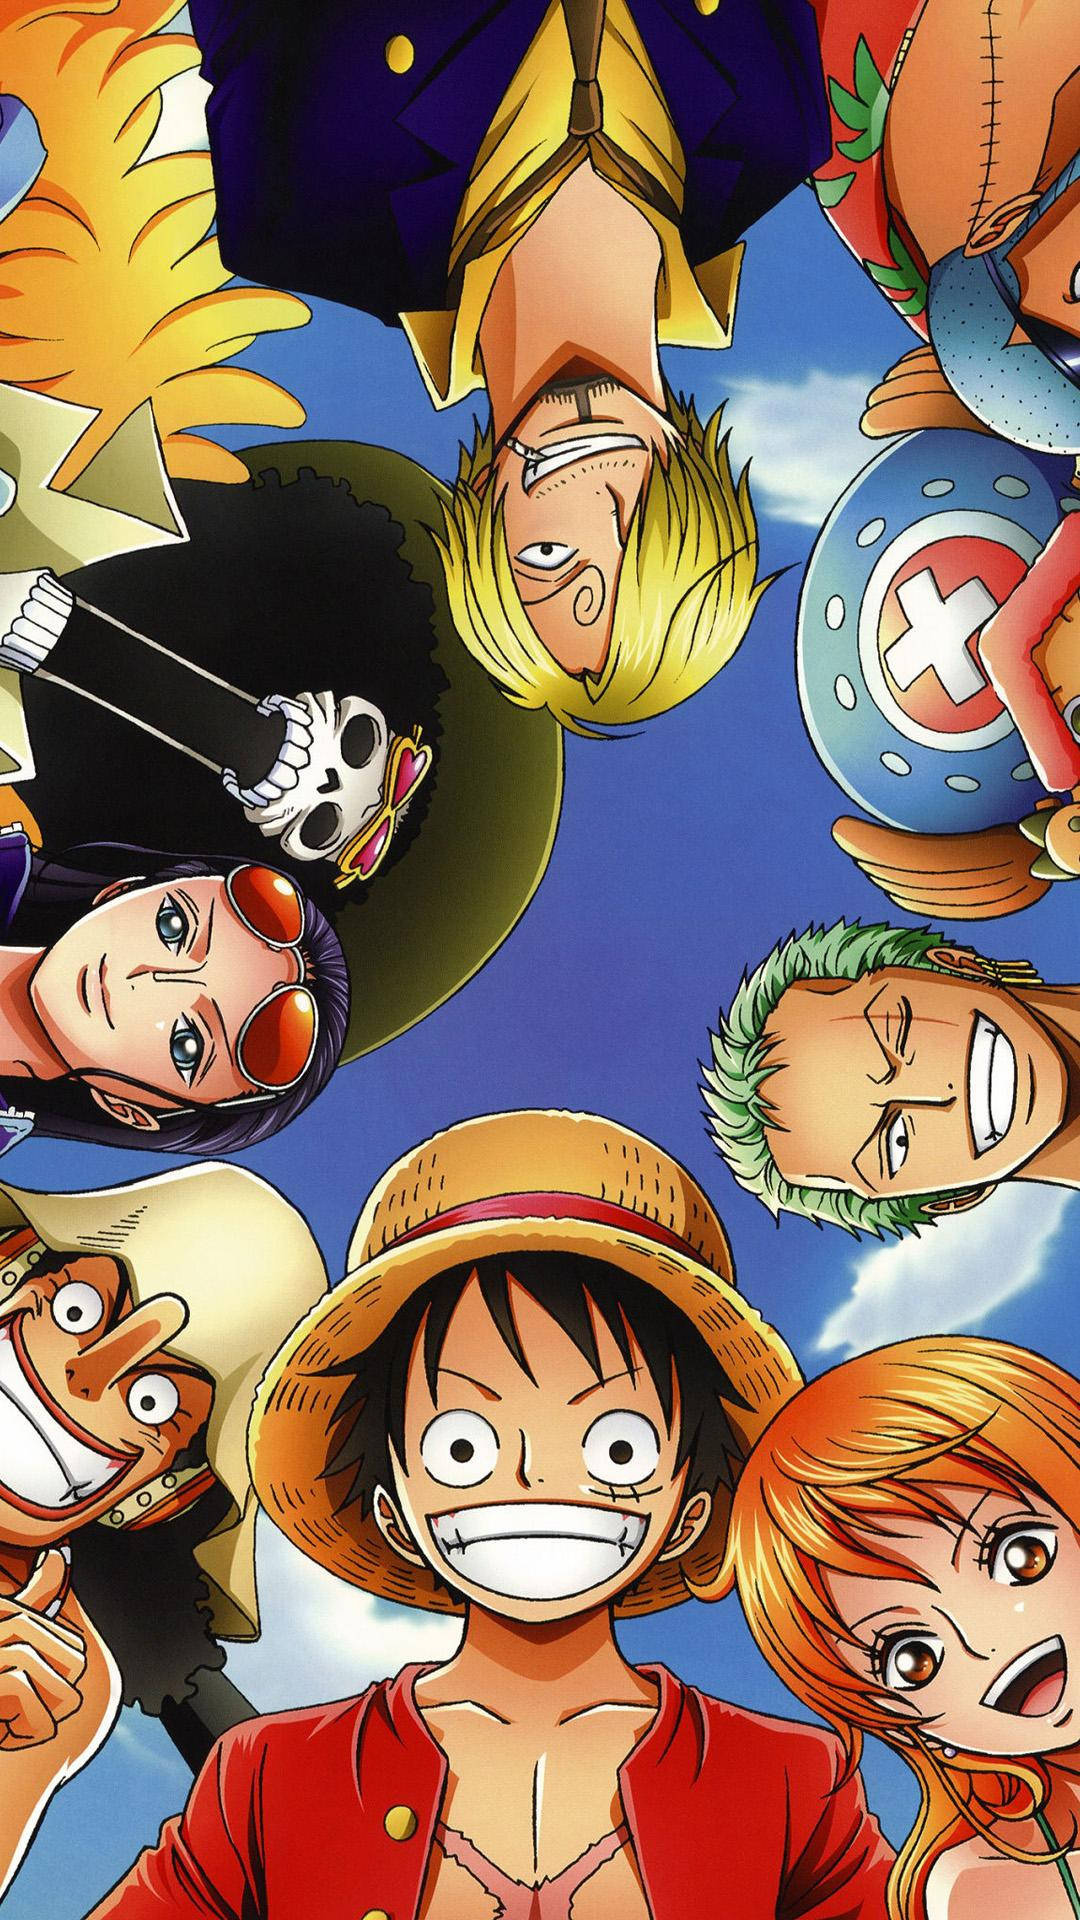 Enlive Cast-bakgrundsbild Av One Piece Med Leende Karaktärer. Wallpaper